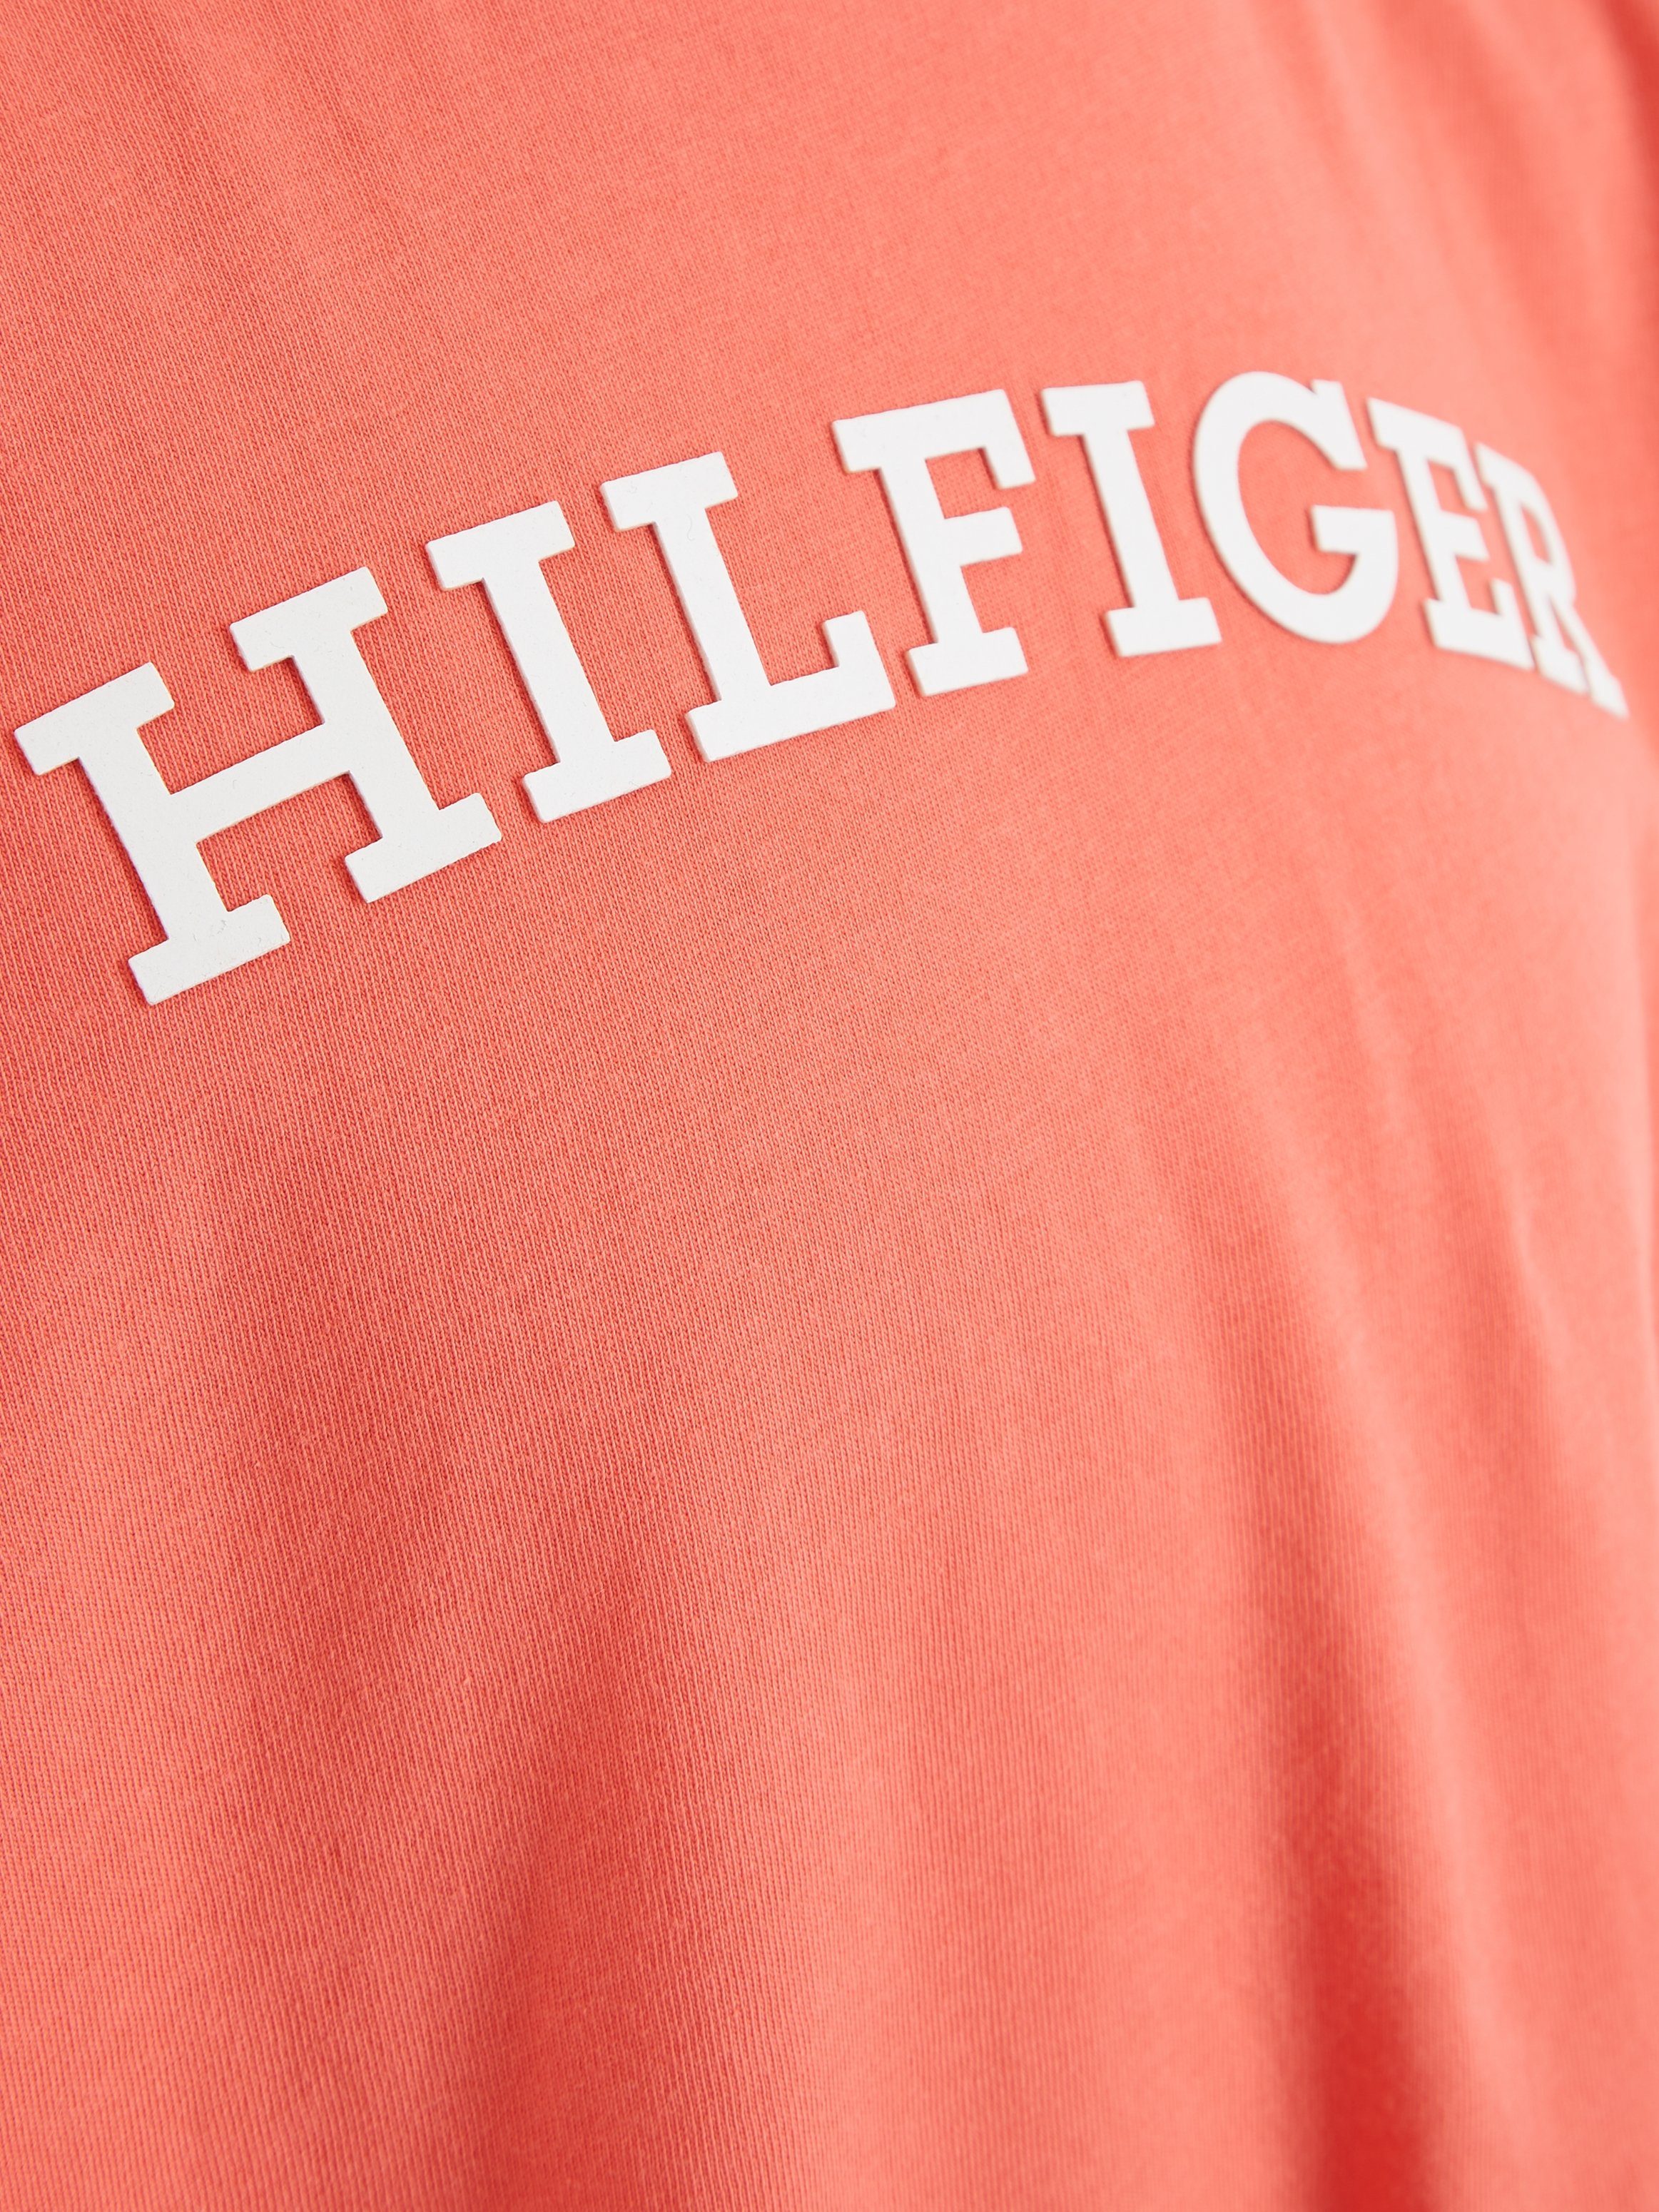 Tommy Hilfiger T-Shirt MONOTYPE TEE auf Brust mit Hilfiger-Logoschriftzug der S/S modischem koralle